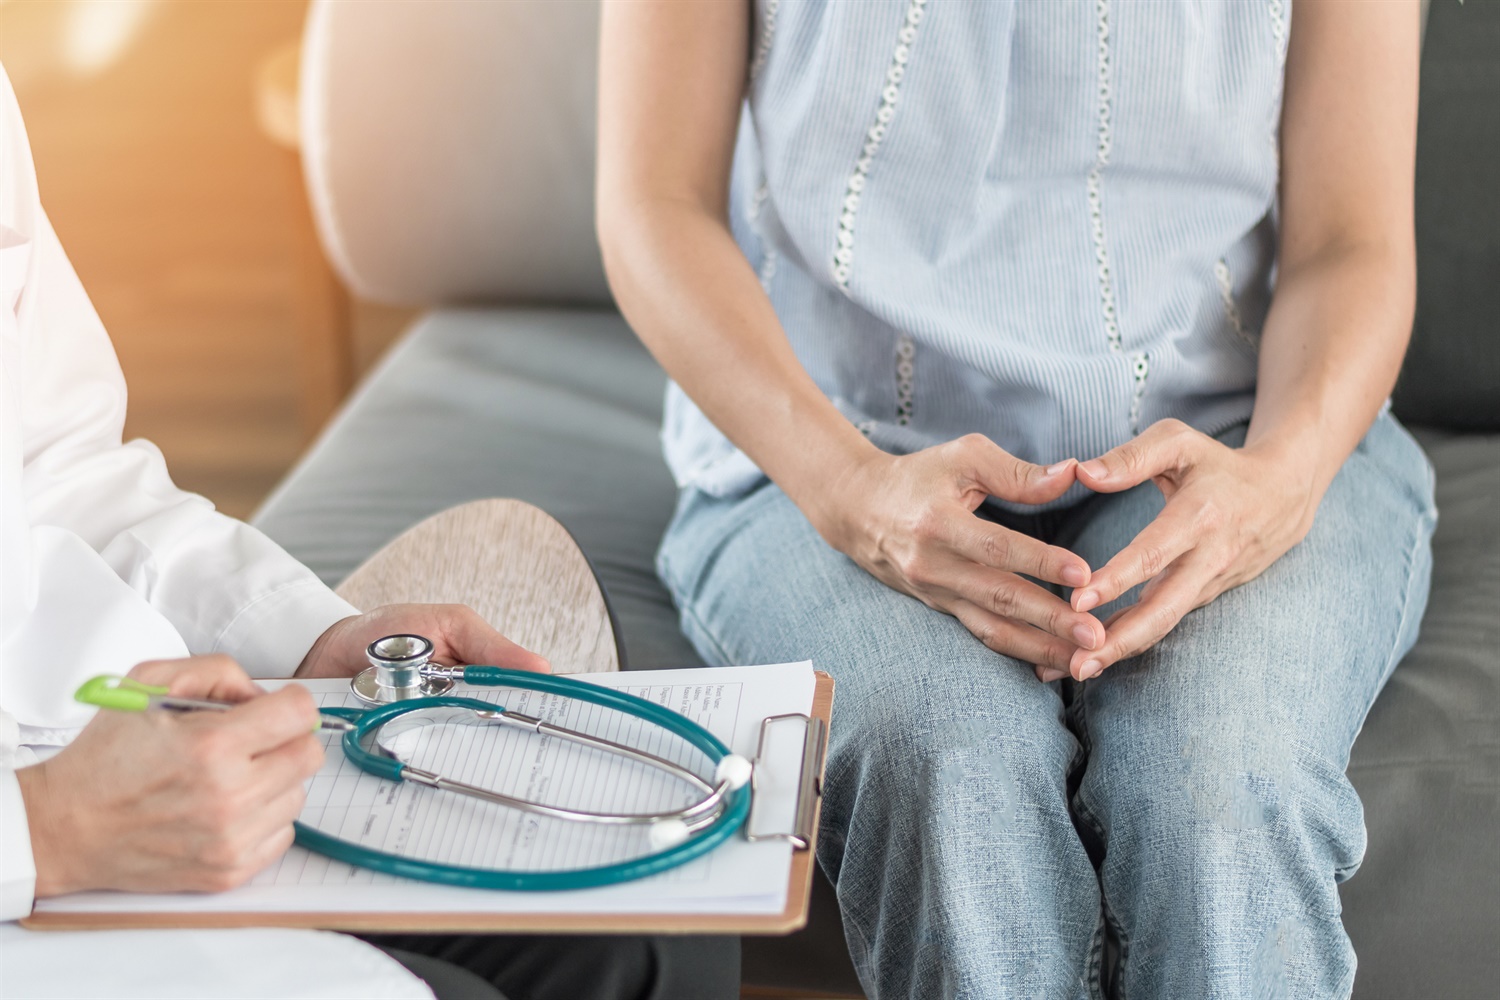 Diagnóstico de menopausia prematura usando la medición de la hormona anti-mülleriana circulante